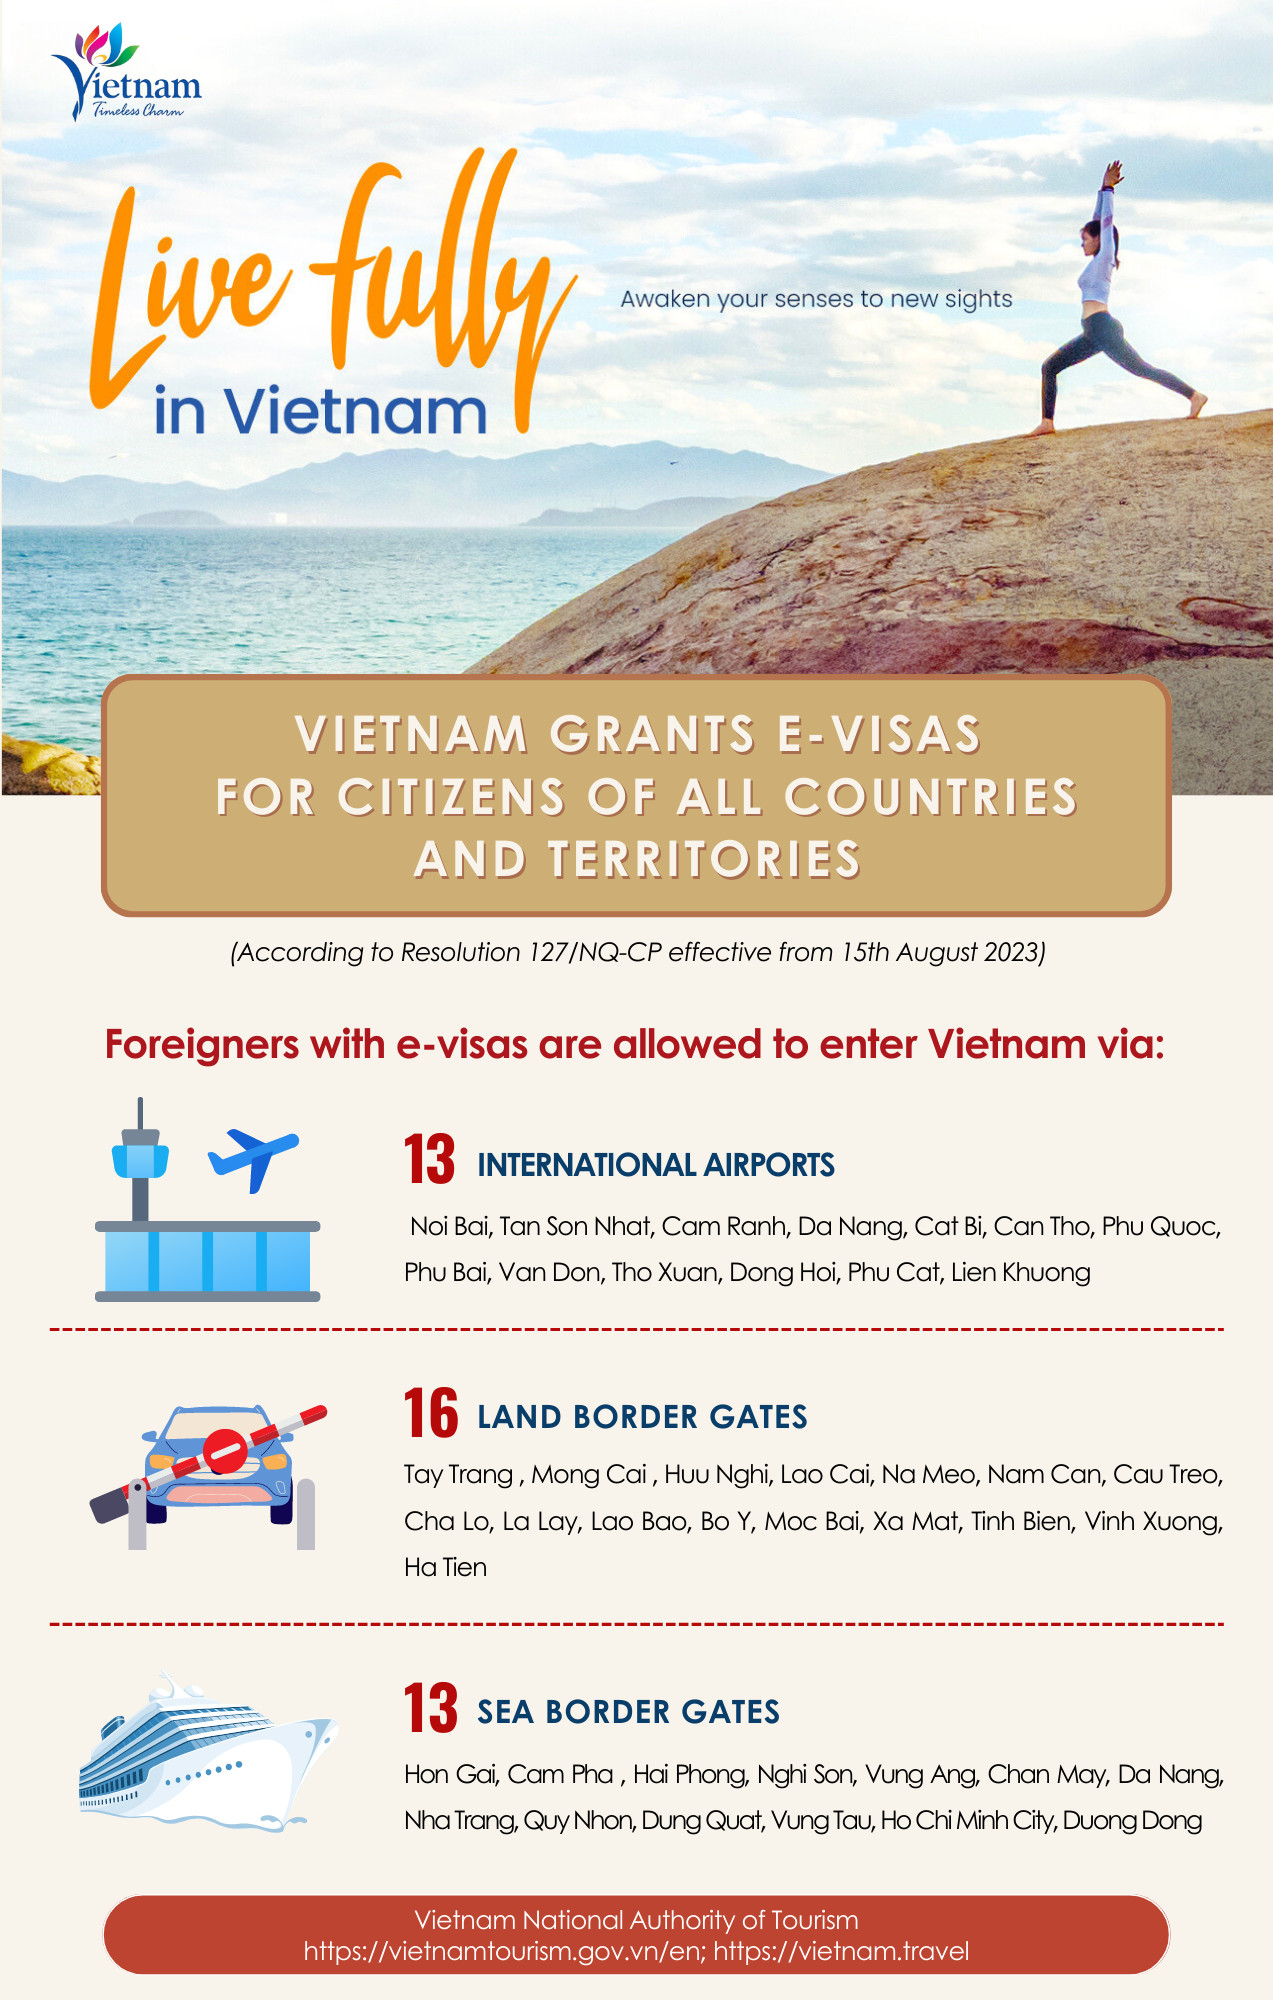 La nueva política de visas electrónicas de Vietnam - Travel Sense Asia - Agencia Vietnam - Foro Ofertas Comerciales de Viajes